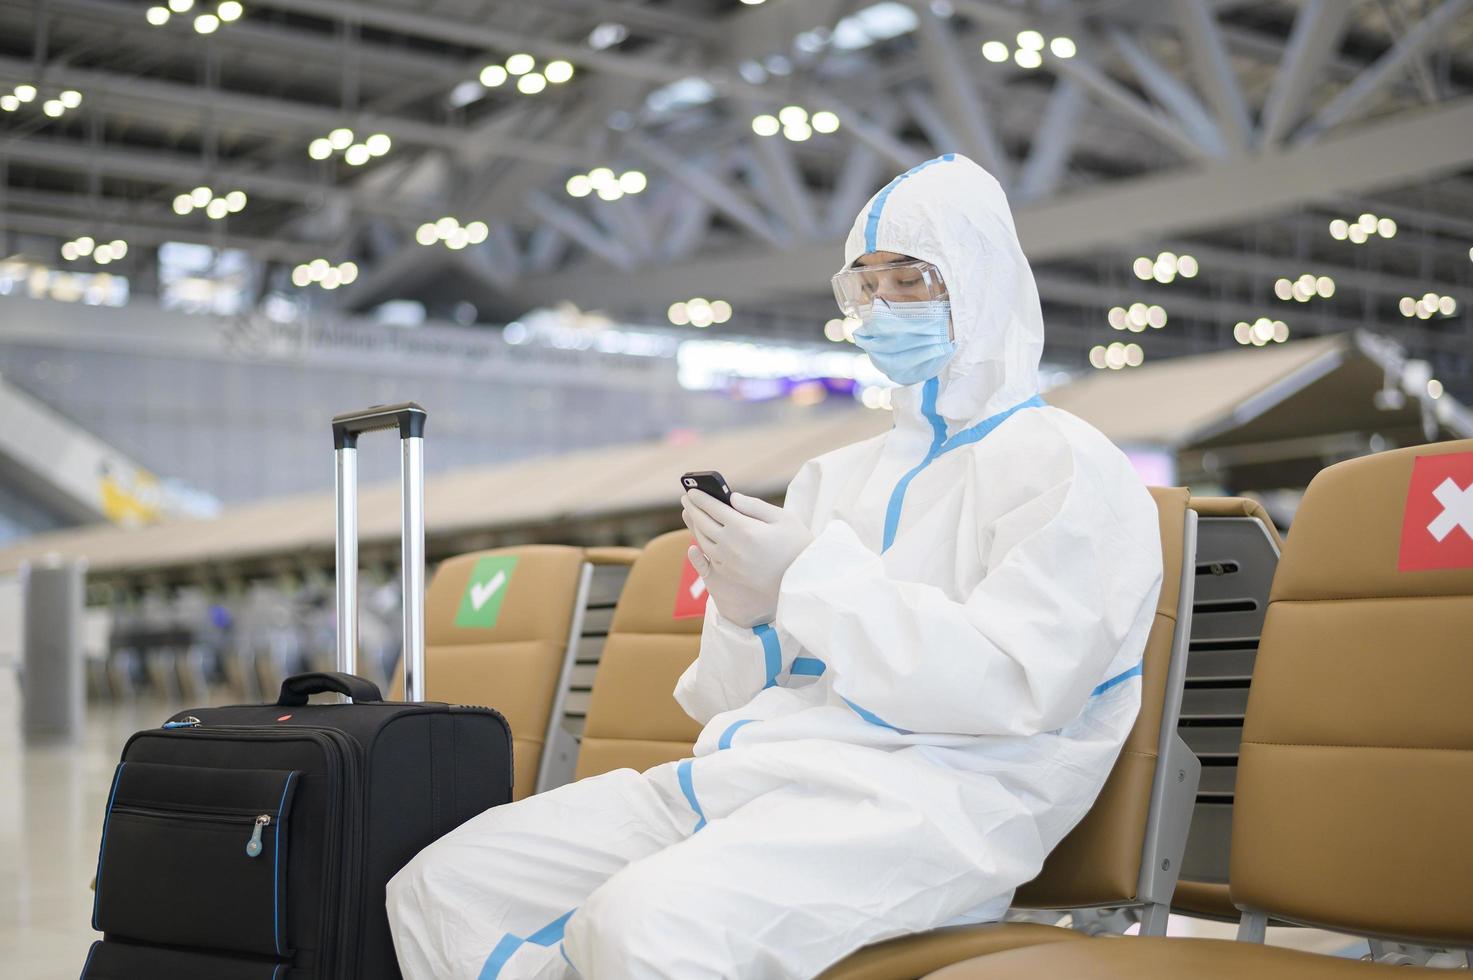 un uomo asiatico indossa una tuta dpi in aeroporto internazionale, viaggi di sicurezza, protezione covid-19, concetto di allontanamento sociale foto